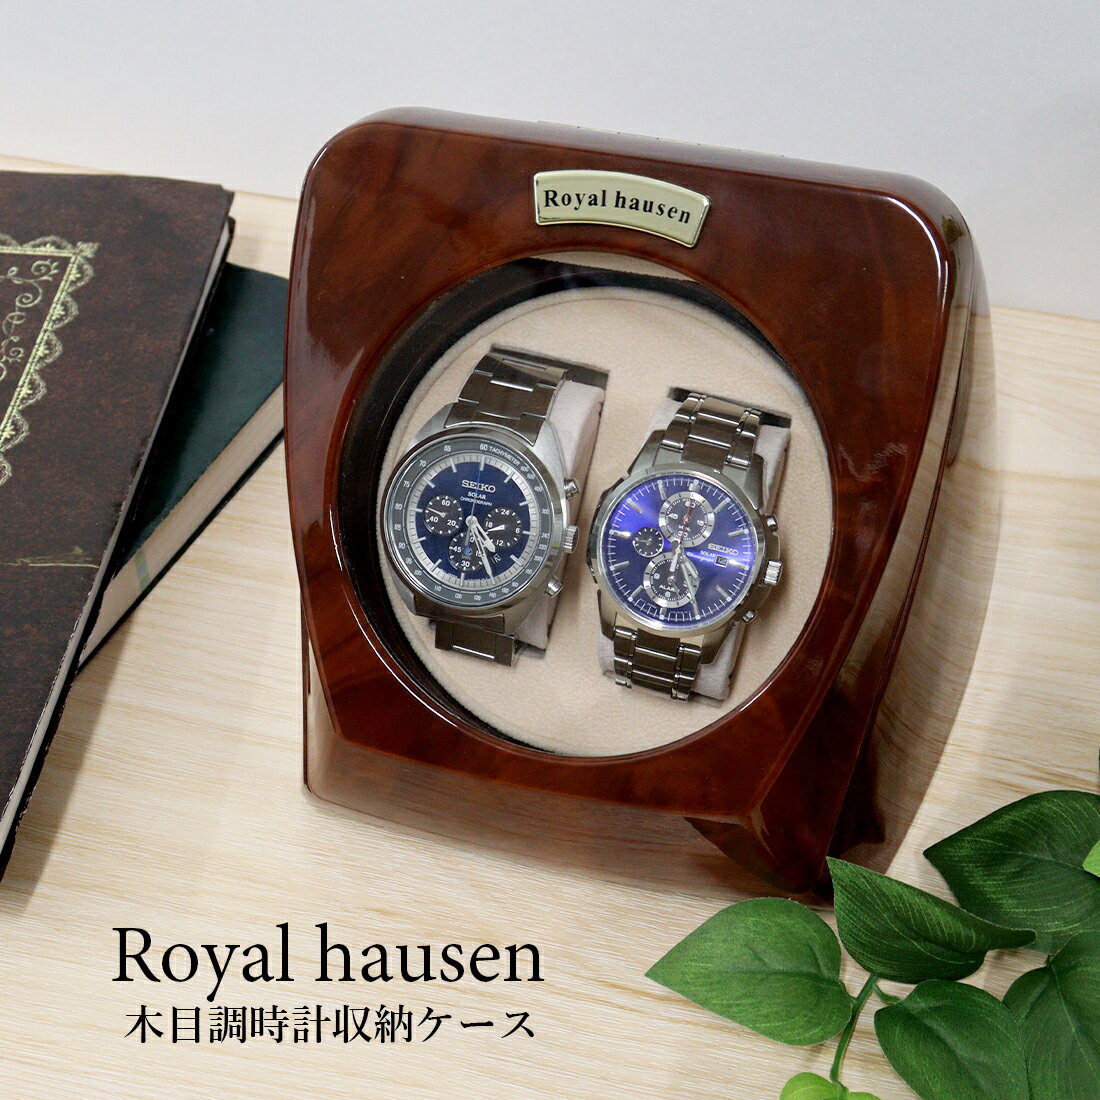 お買い物マラソン ポイント10倍 訳あり 塗装ムラ,小キズあり 公式 Royal hausen ロイヤルハウゼン ワインダー ウォッチワインダー ワインディングマシーン 2本巻き RH003 木目調 腕時計ケース